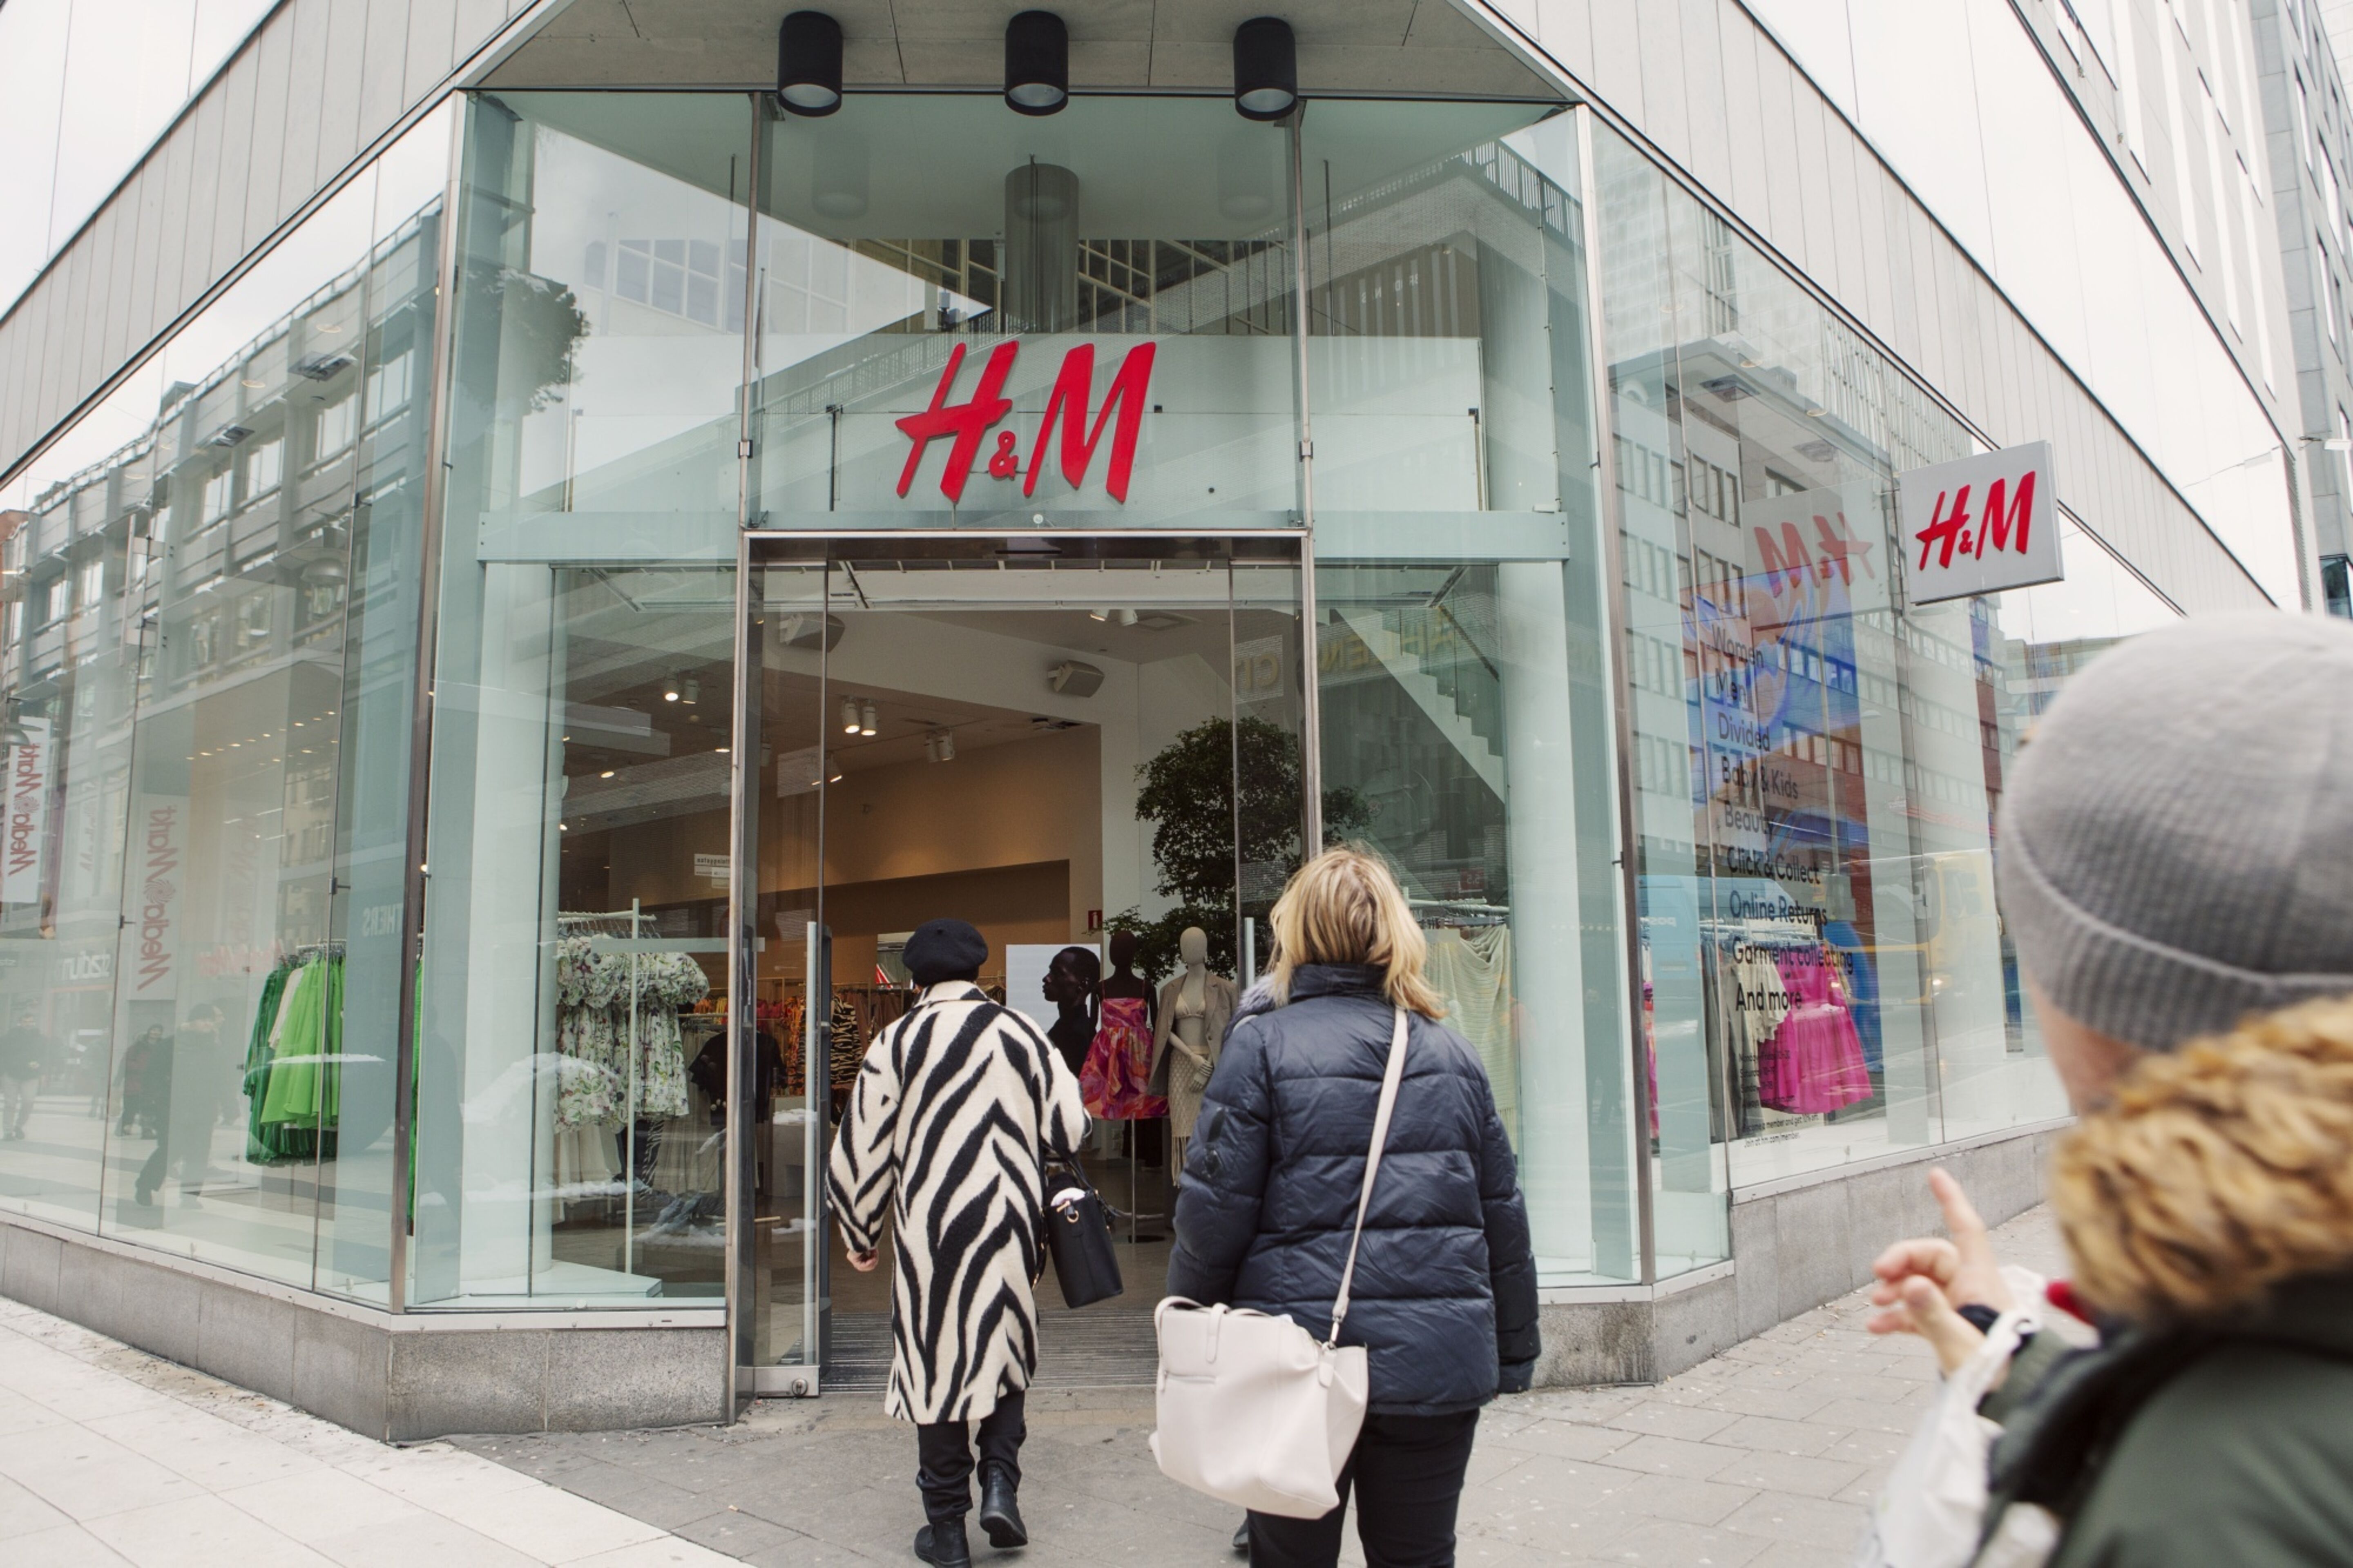 Varejista de moda H&M será lançada no Brasil, Empreendedorismo